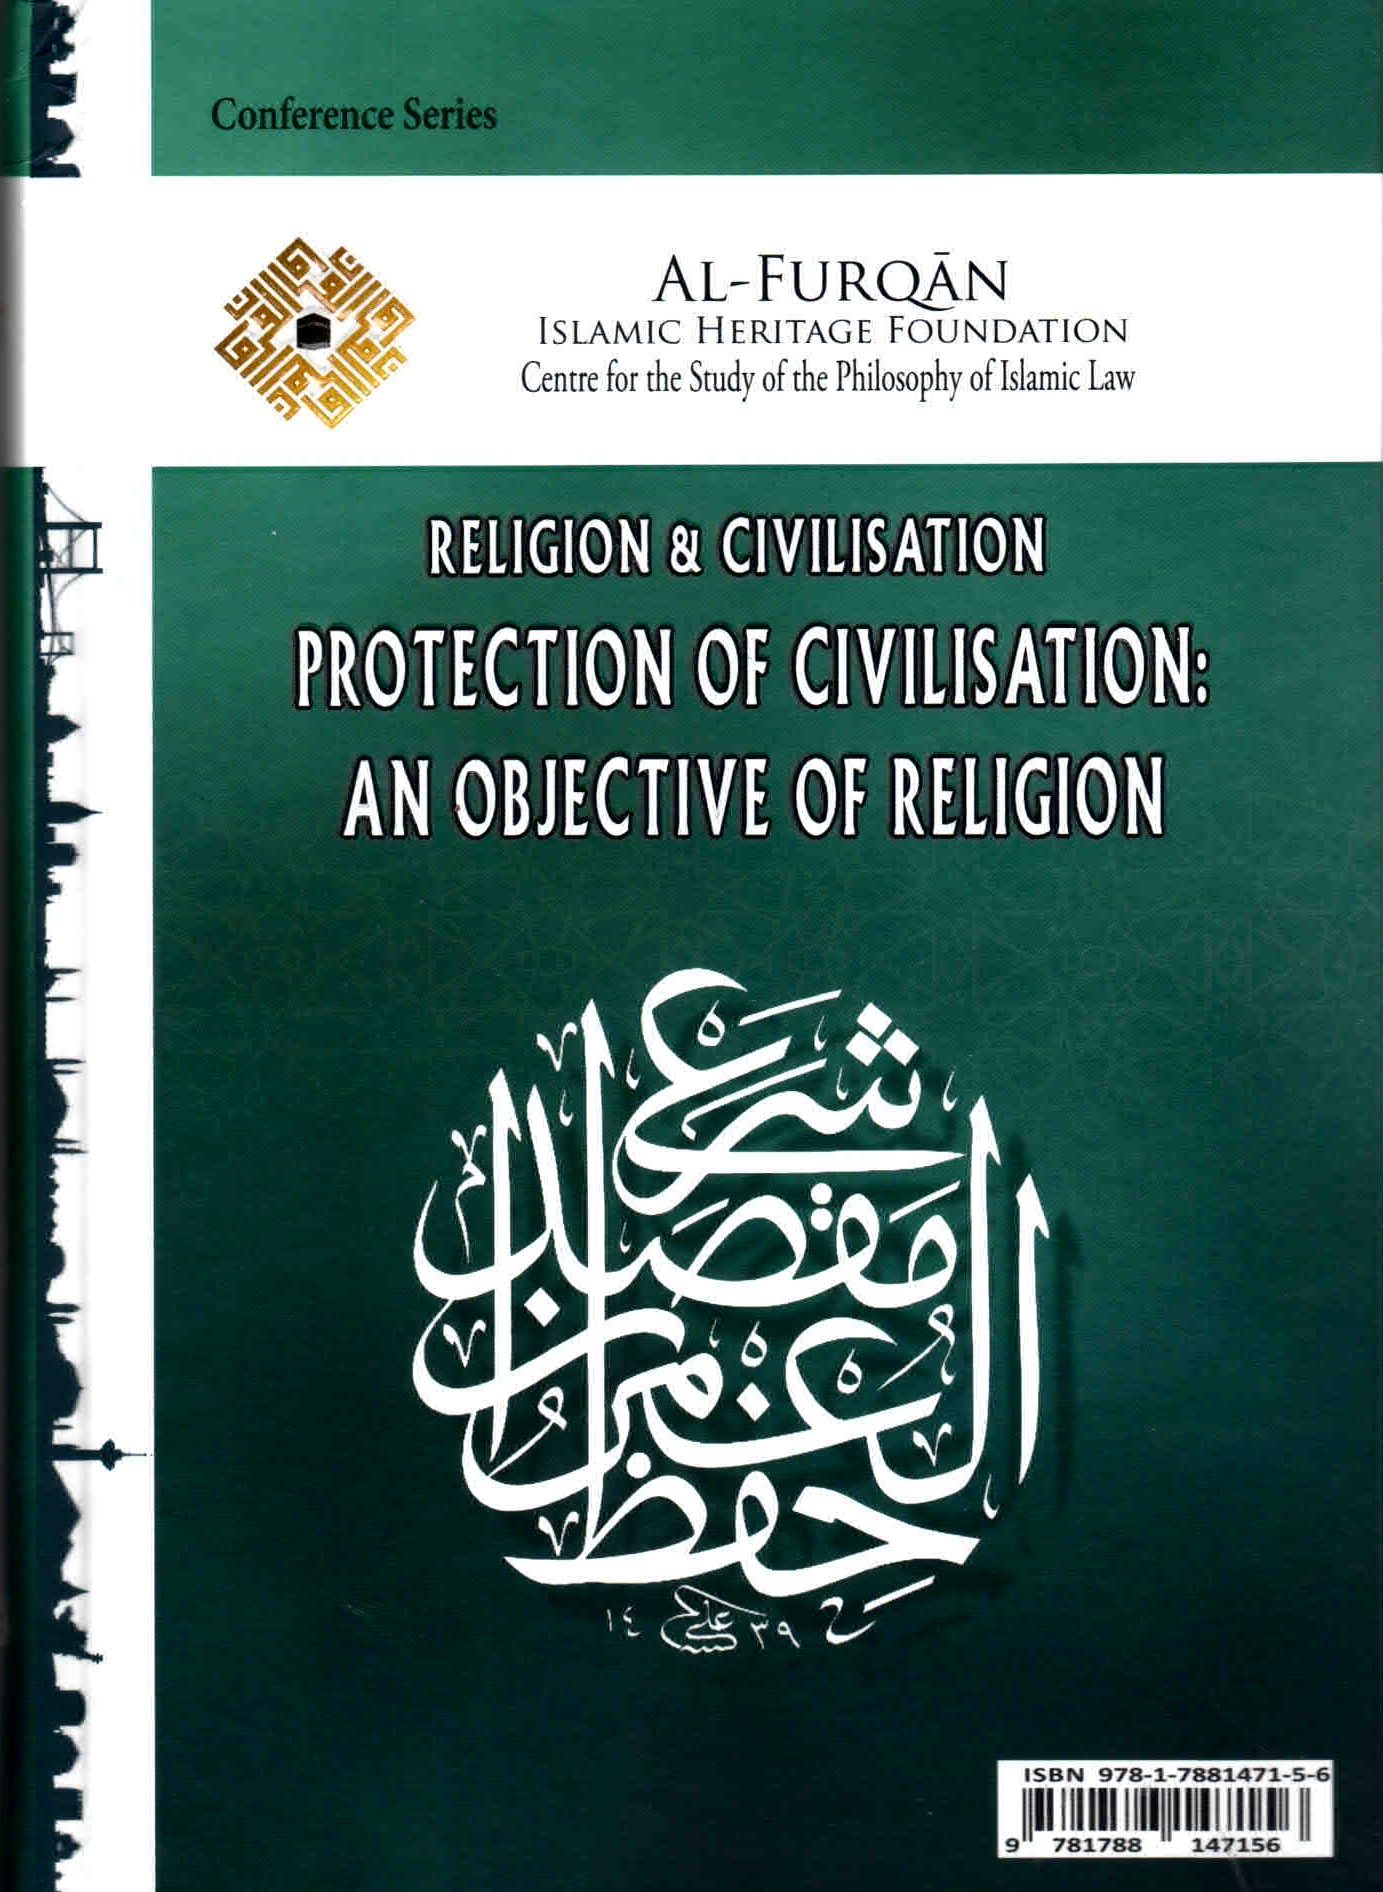 خلفية غلاف مؤتمر الدين والحضارة.